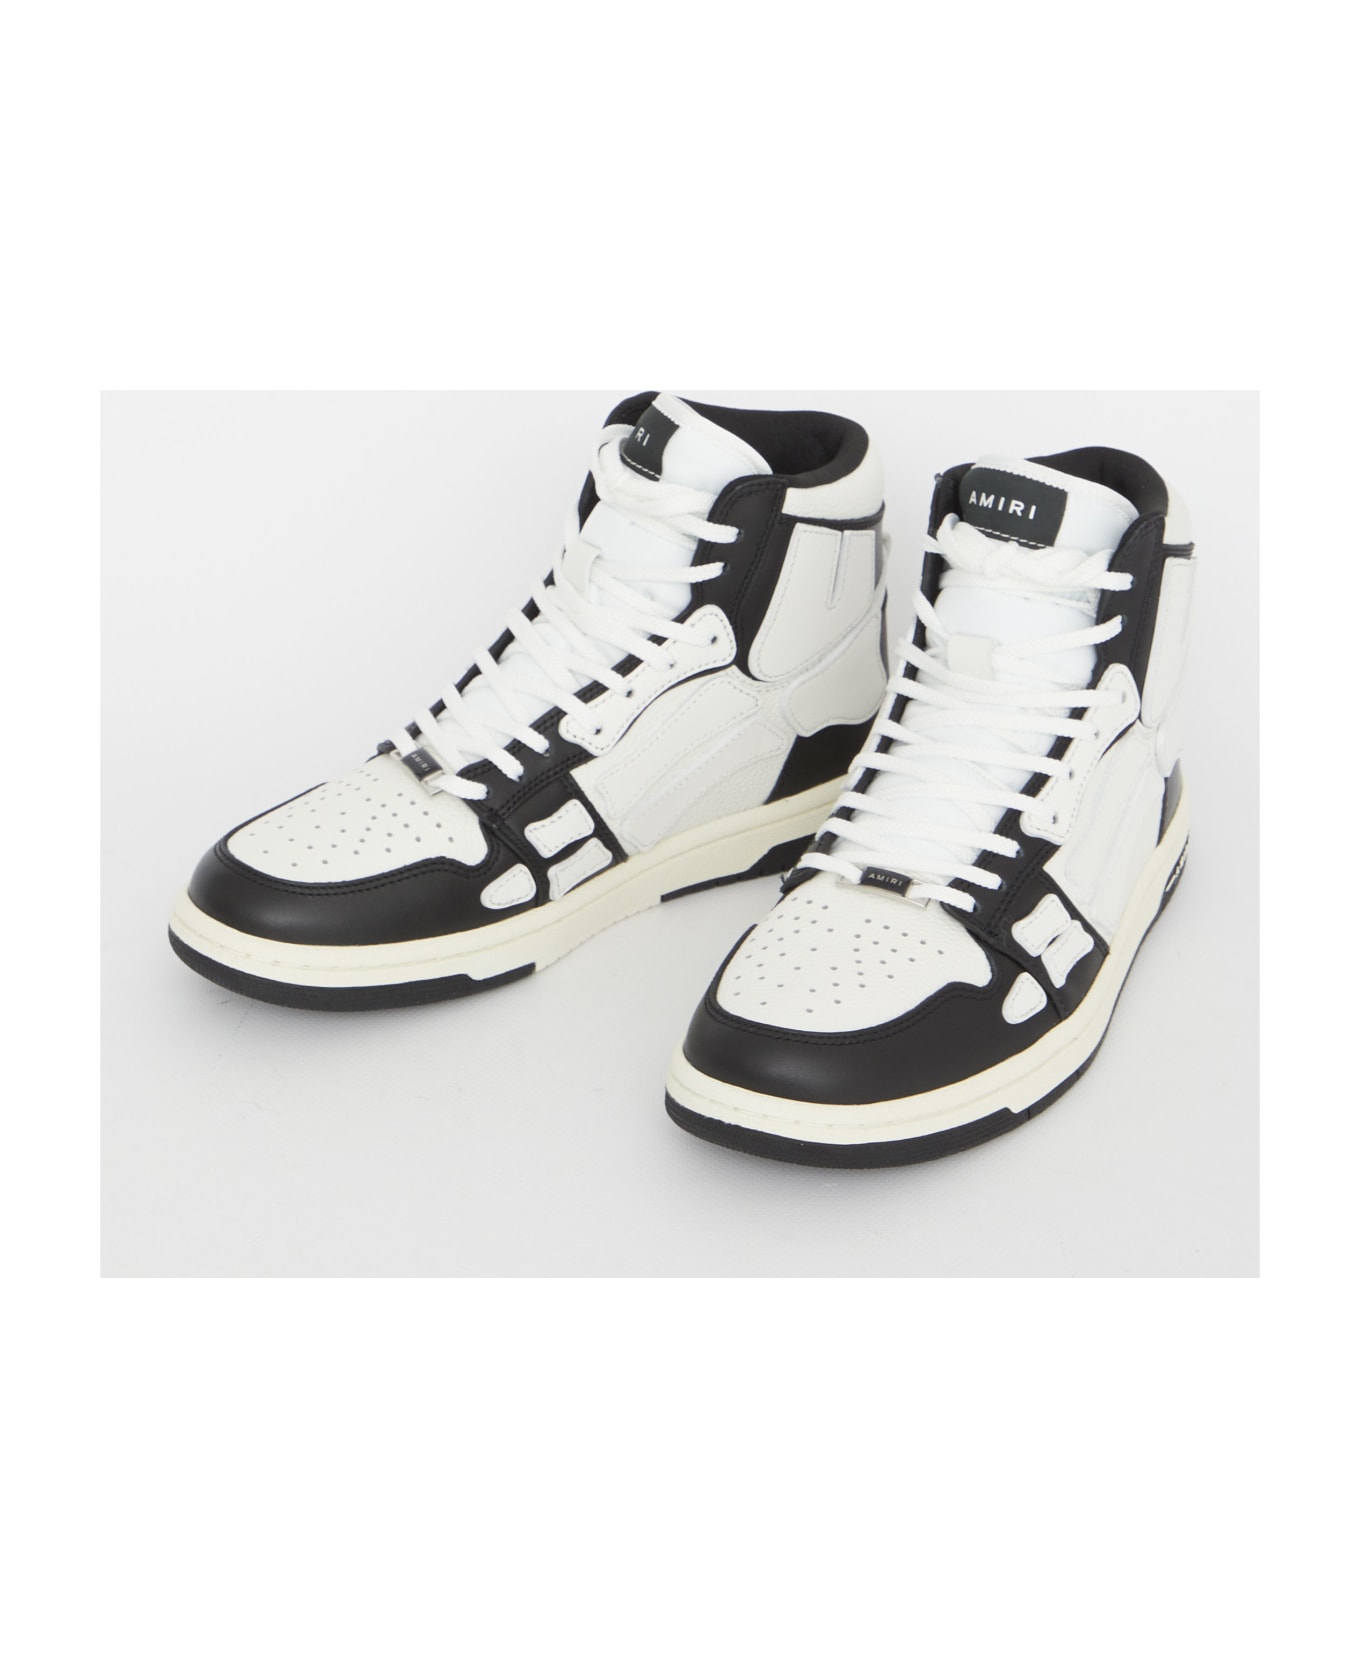 AMIRI Skel-top Hi Sneakers - BLACK WHITE